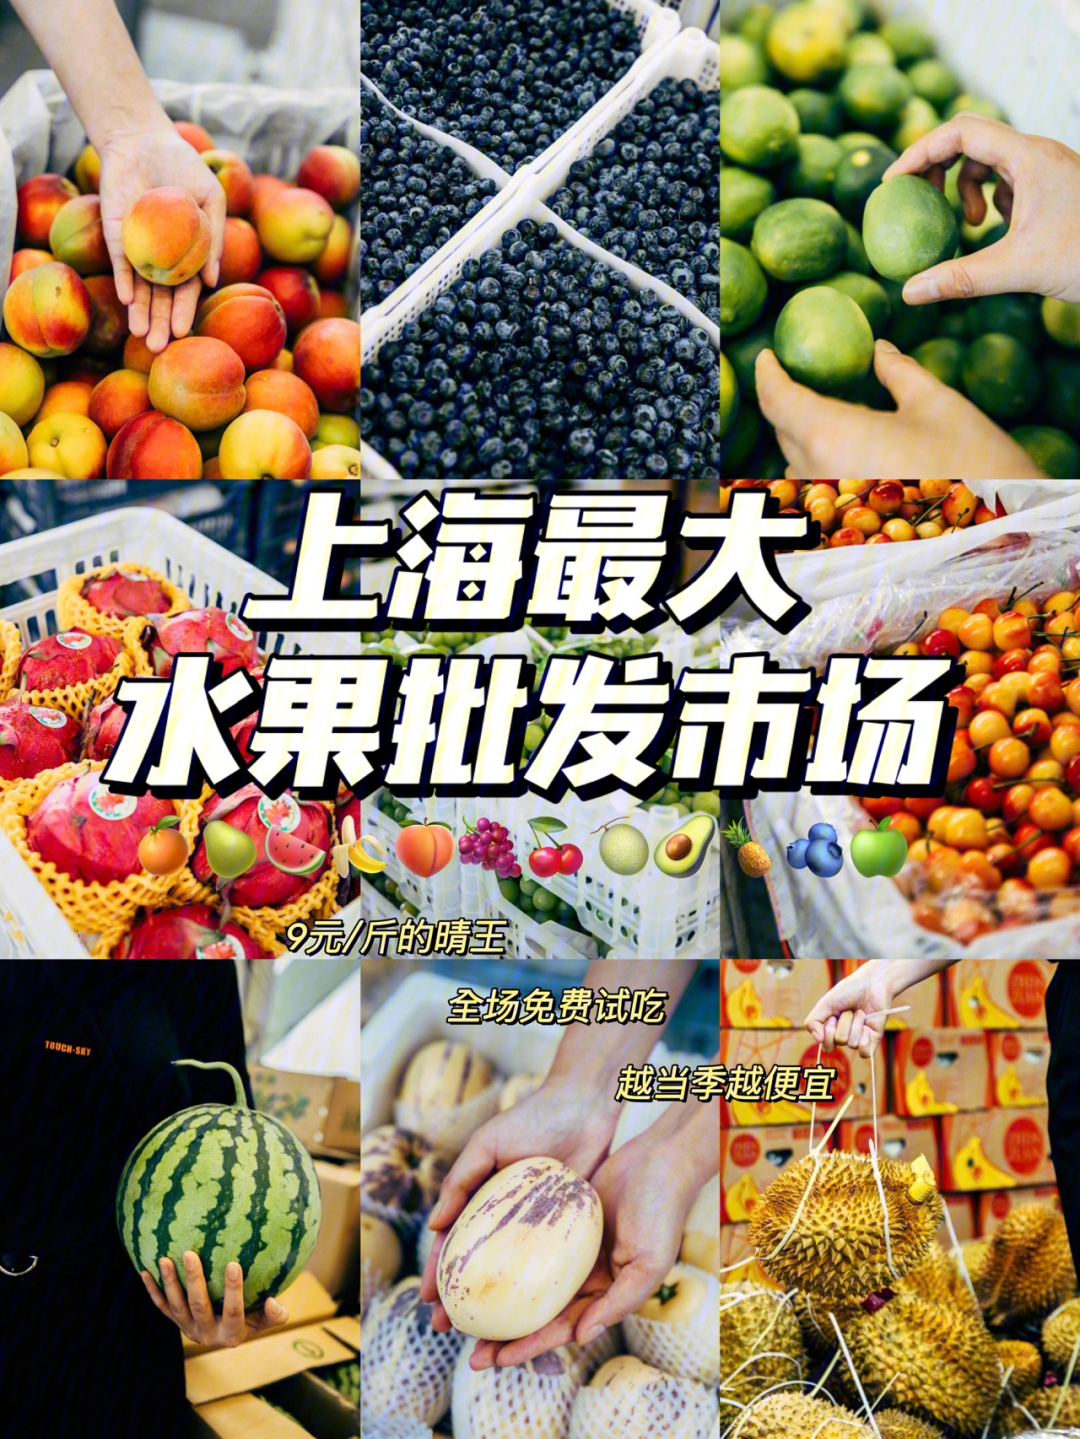 上海包装盒市场批发_上海批发零食市场在哪_上海水果批发市场